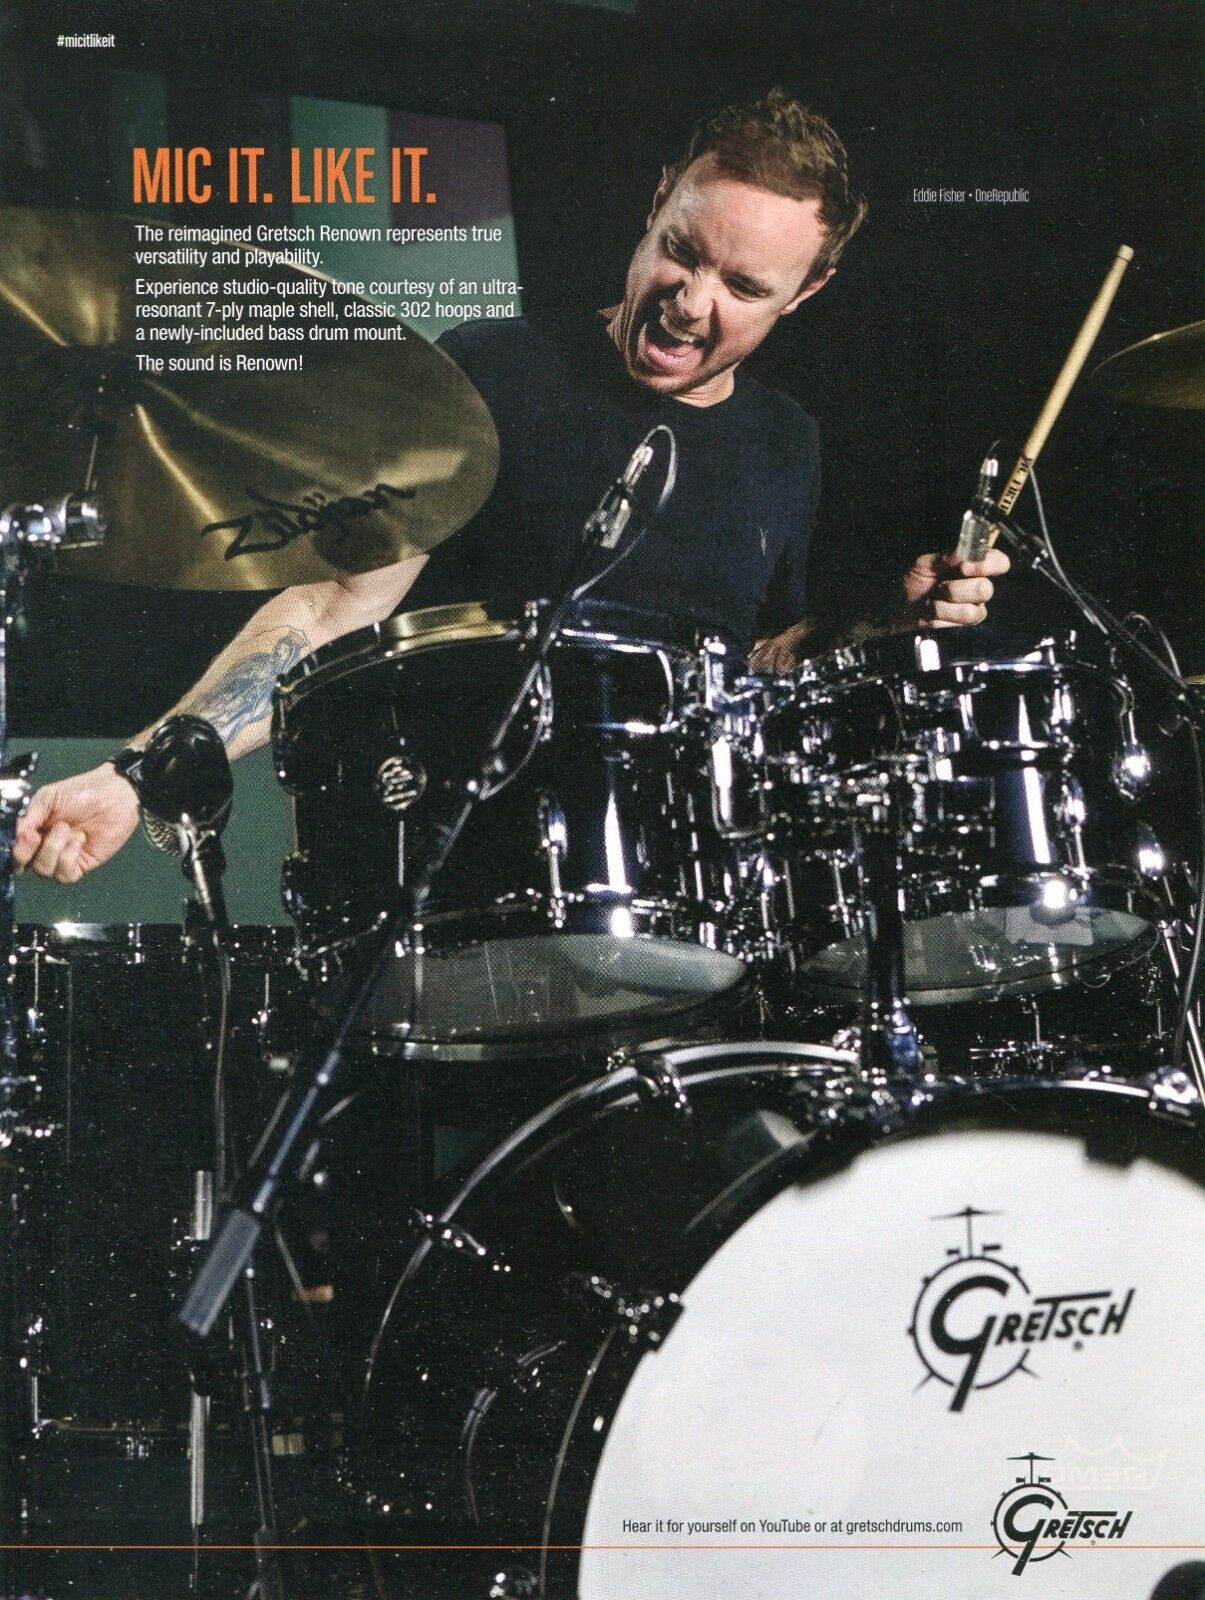 2017 Print Ad of Gretsch Renown Drum Kit w Eddie Fisher of OneRepublic